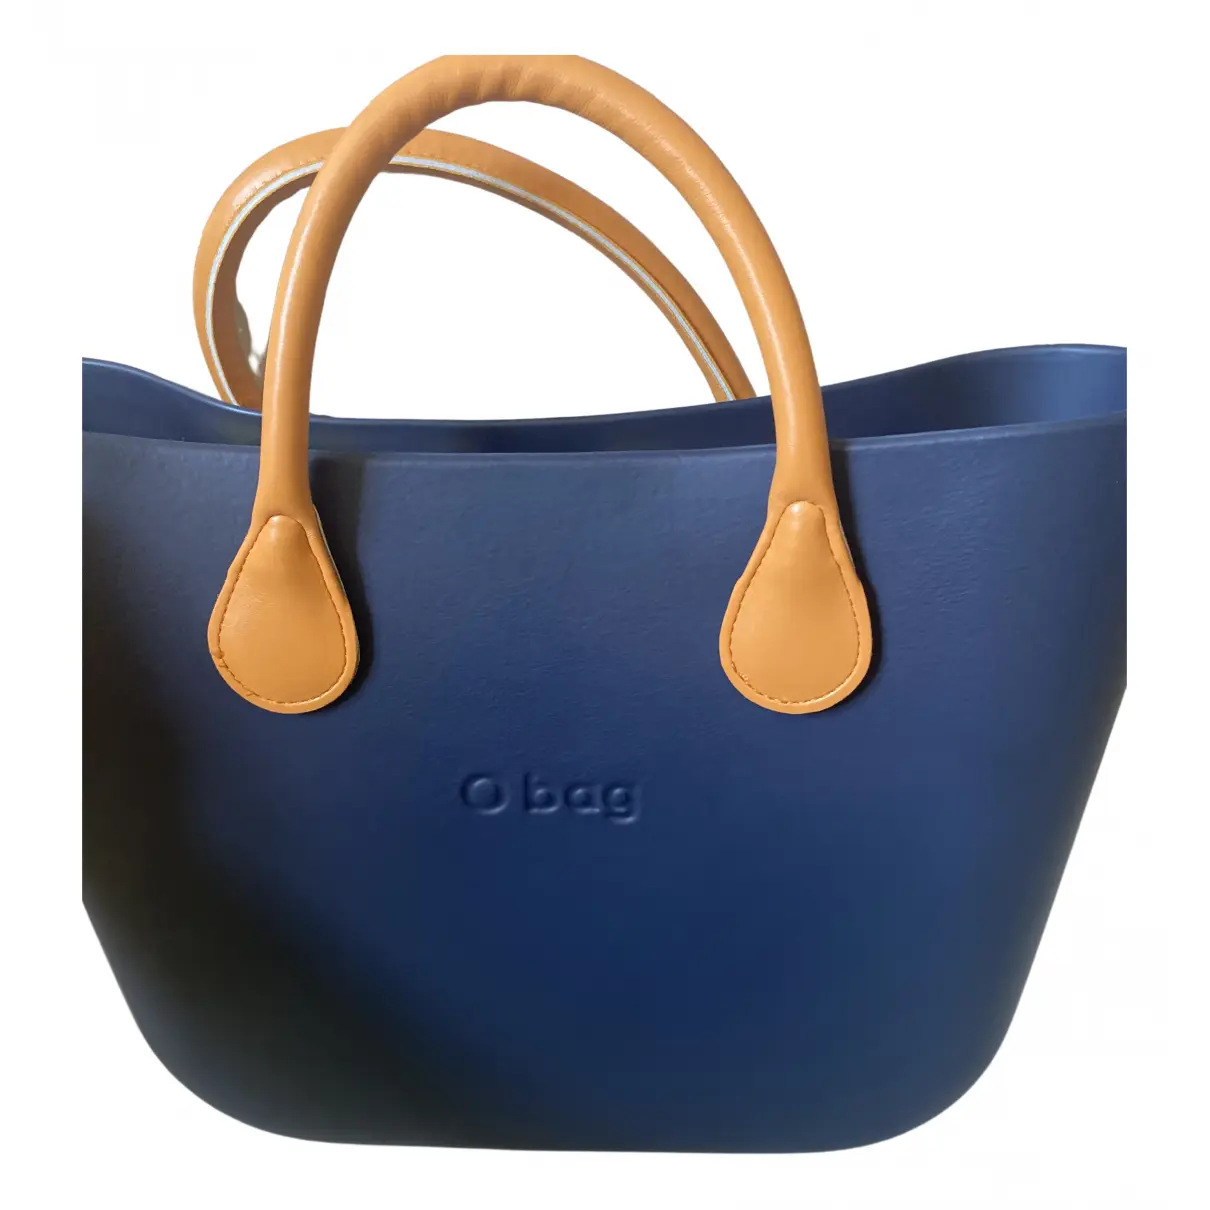 Handbag O bag